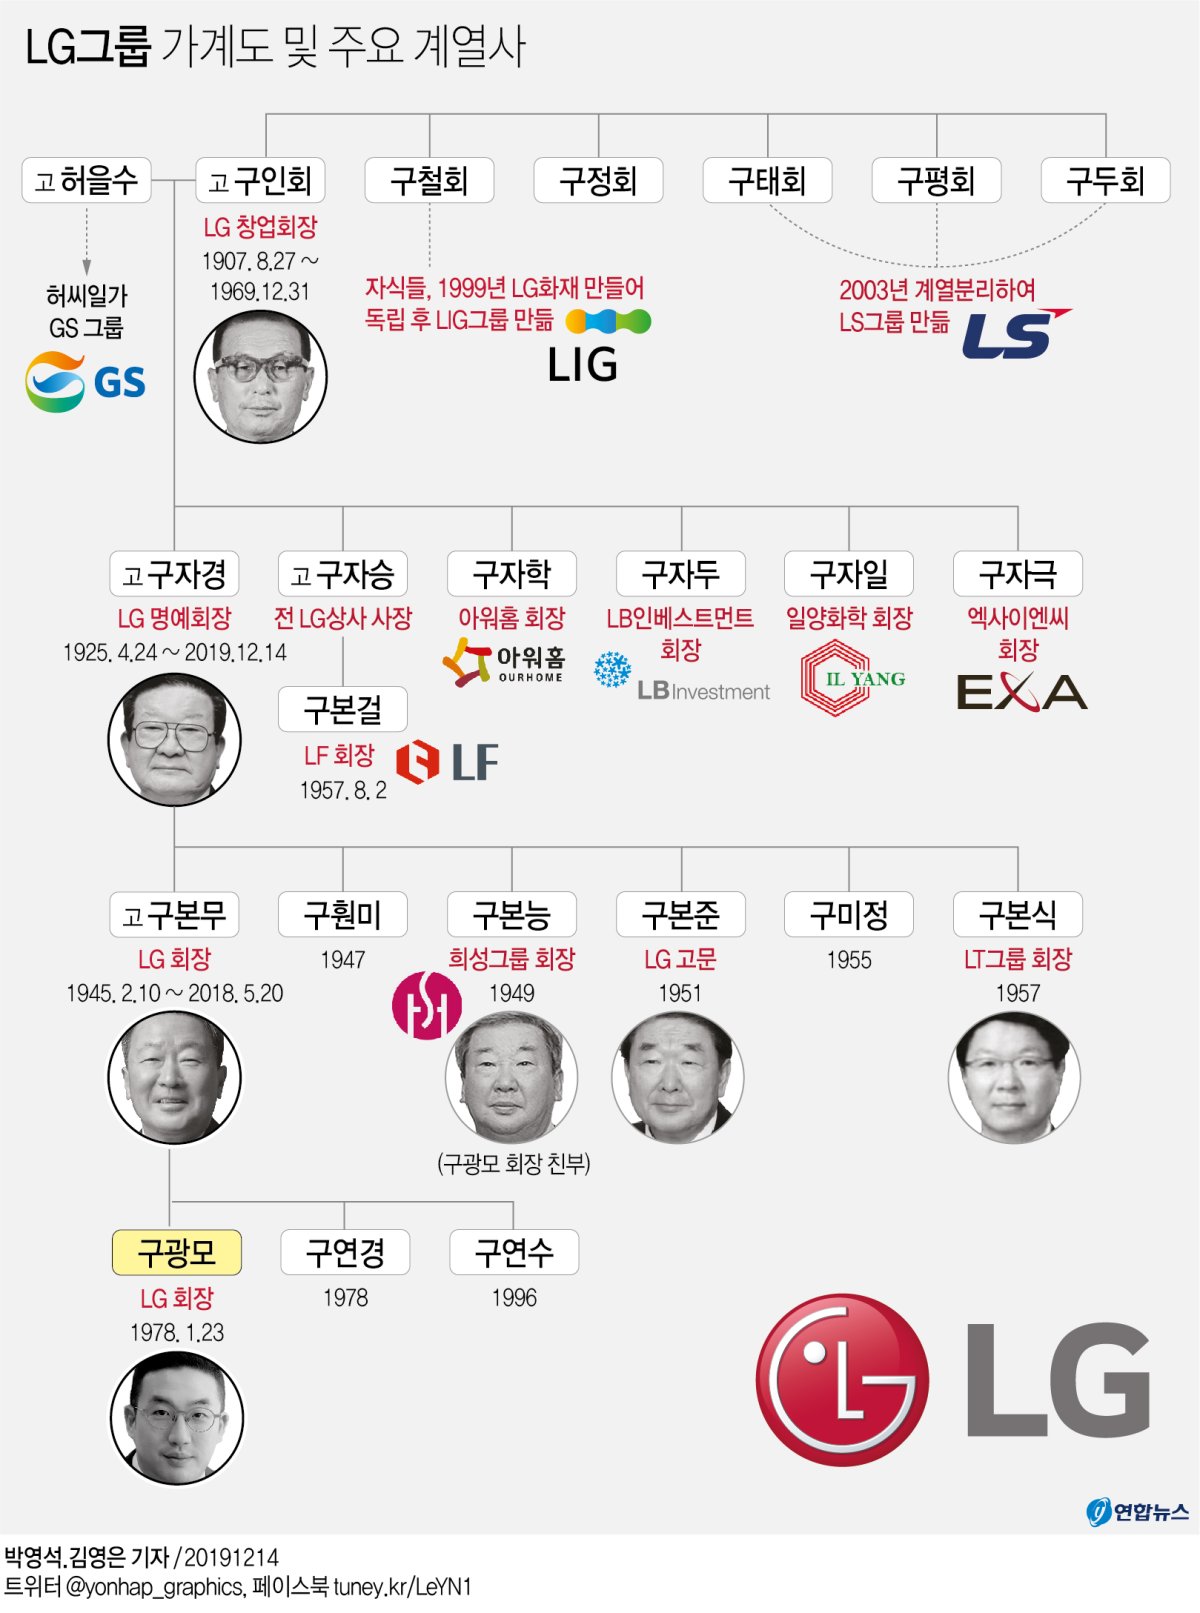 [그래픽] LG그룹 가계도 및 주요 계열사